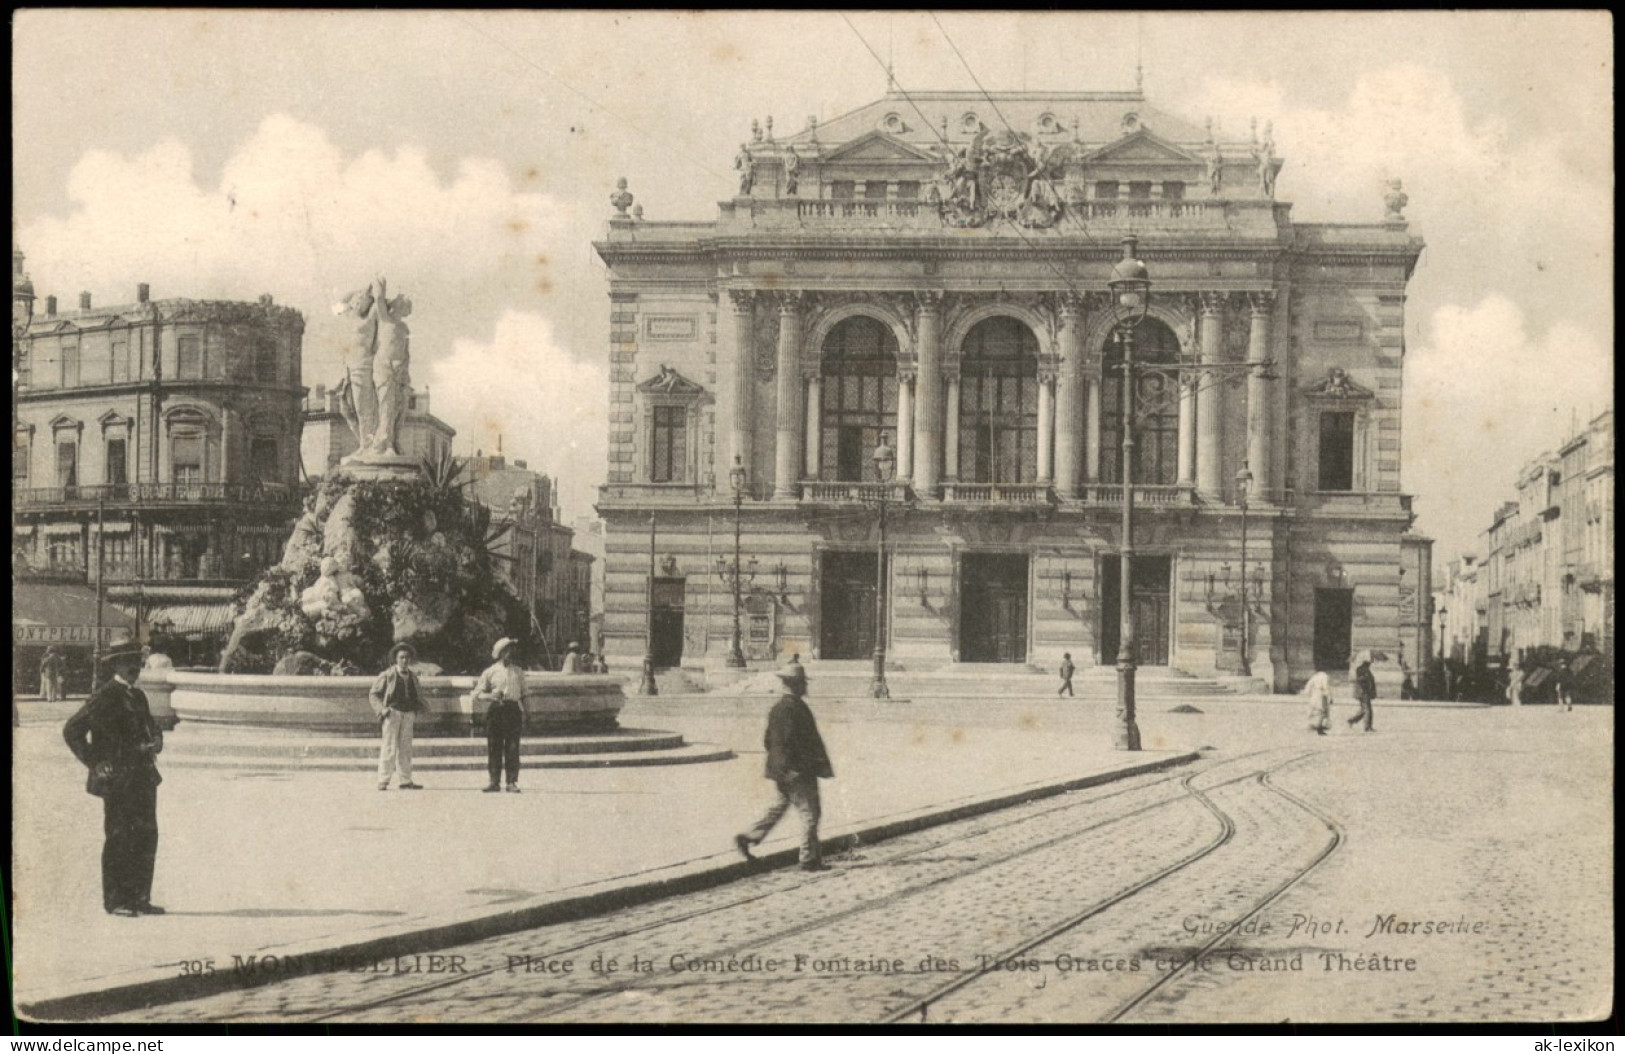 Montpellier Place De La Comédie Fontaine Des Drois-Graces Eye Grand Théâtre 1906 - Montpellier